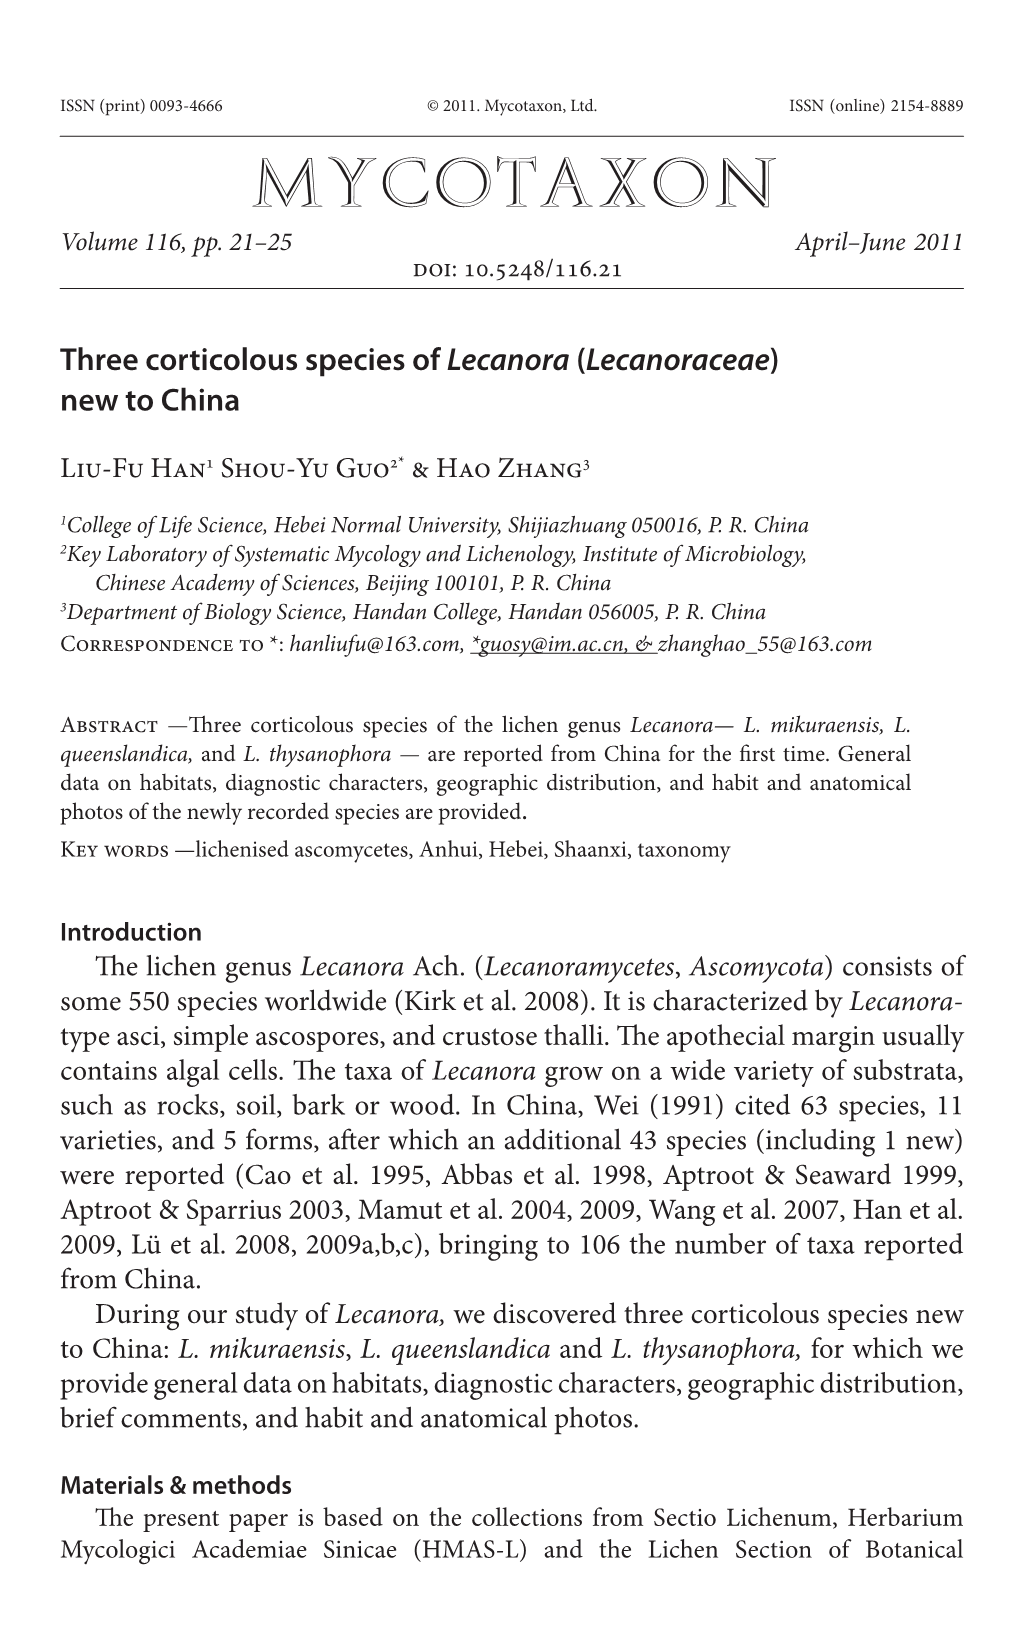 Three Corticolous Species of &lt;I&gt;Lecanora&lt;/I&gt;